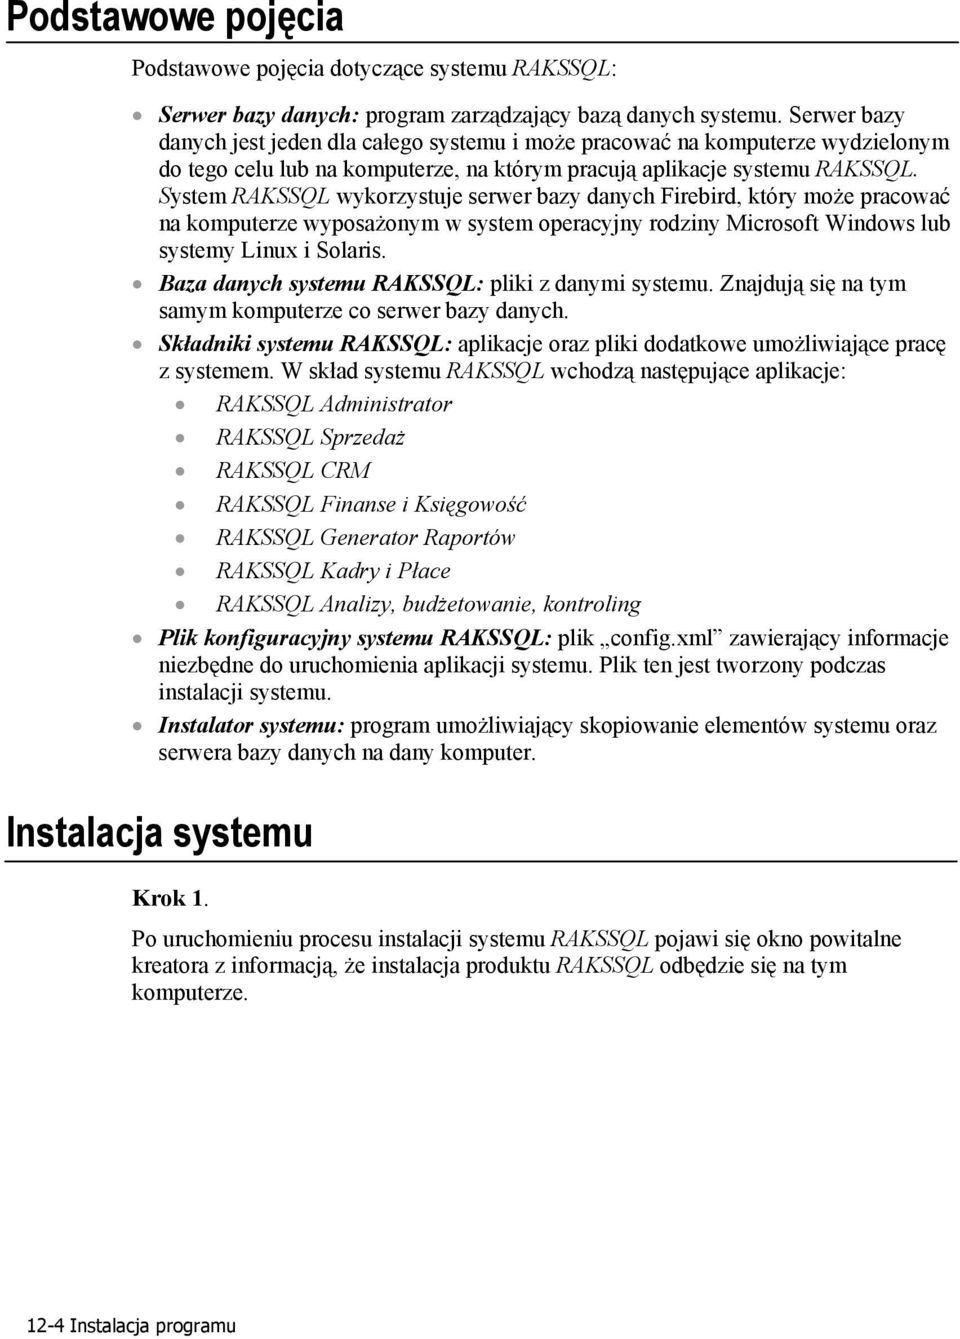 System RAKSSQL wykorzystuje serwer bazy danych Firebird, który może pracować na komputerze wyposażonym w system operacyjny rodziny Microsoft Windows lub systemy Linux i Solaris.